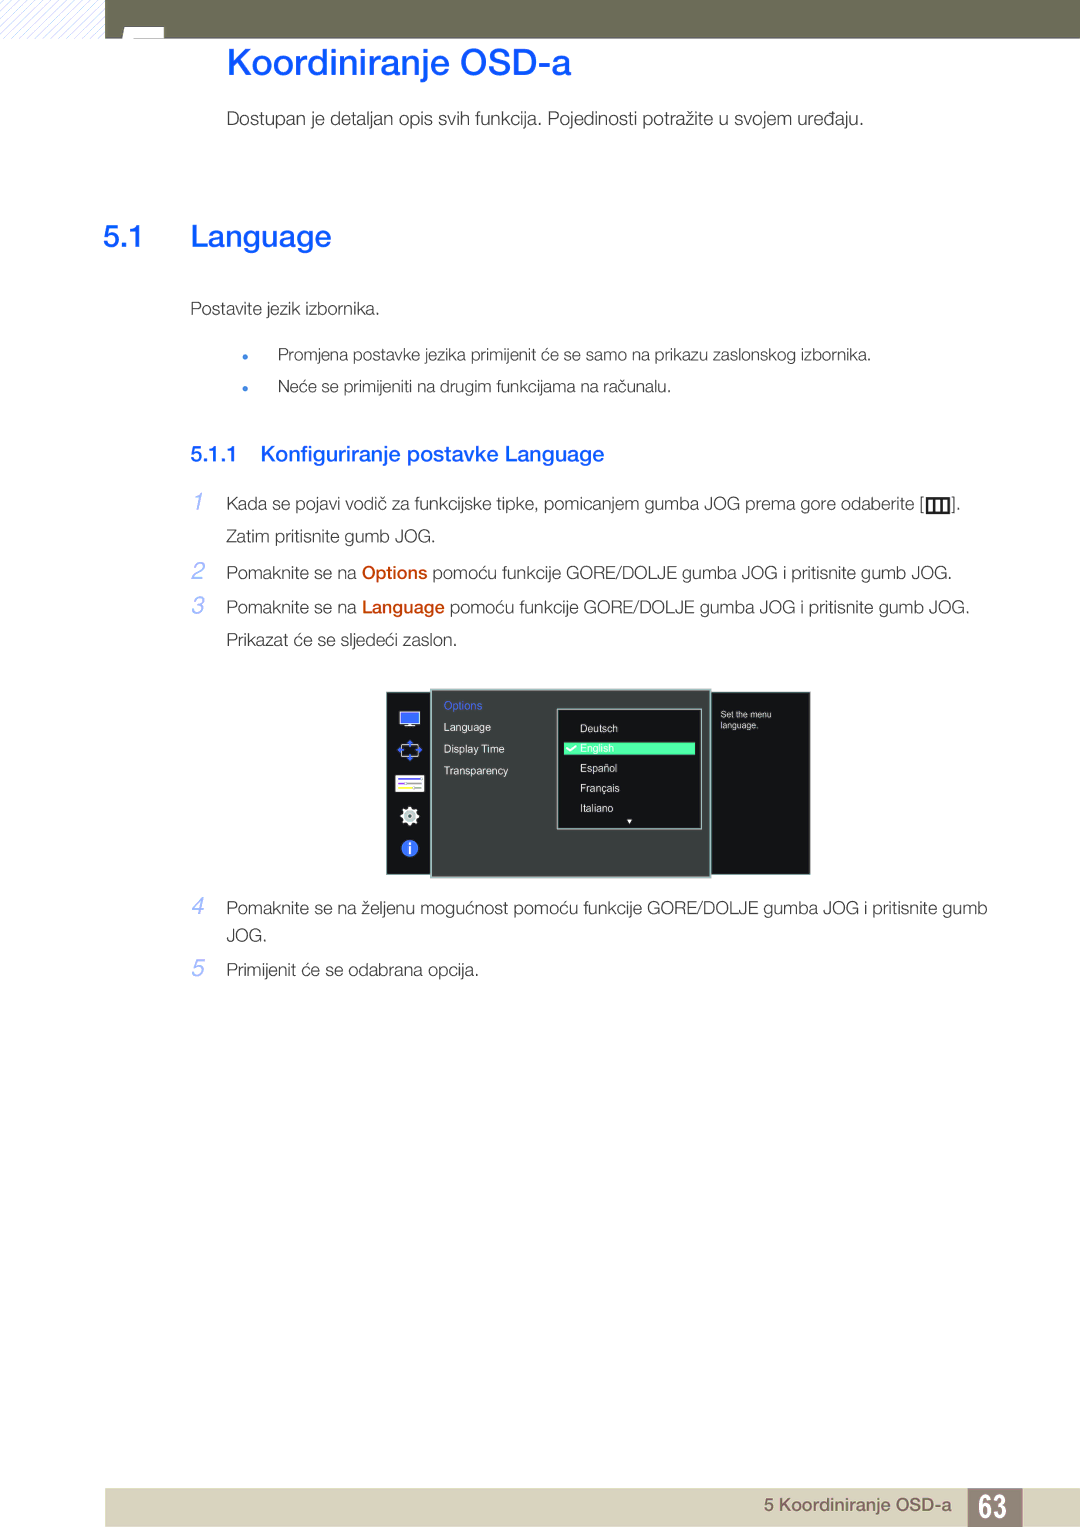 Samsung LU28D590DS/EN manual Koordiniranje OSD-a, Konfiguriranje postavke Language 